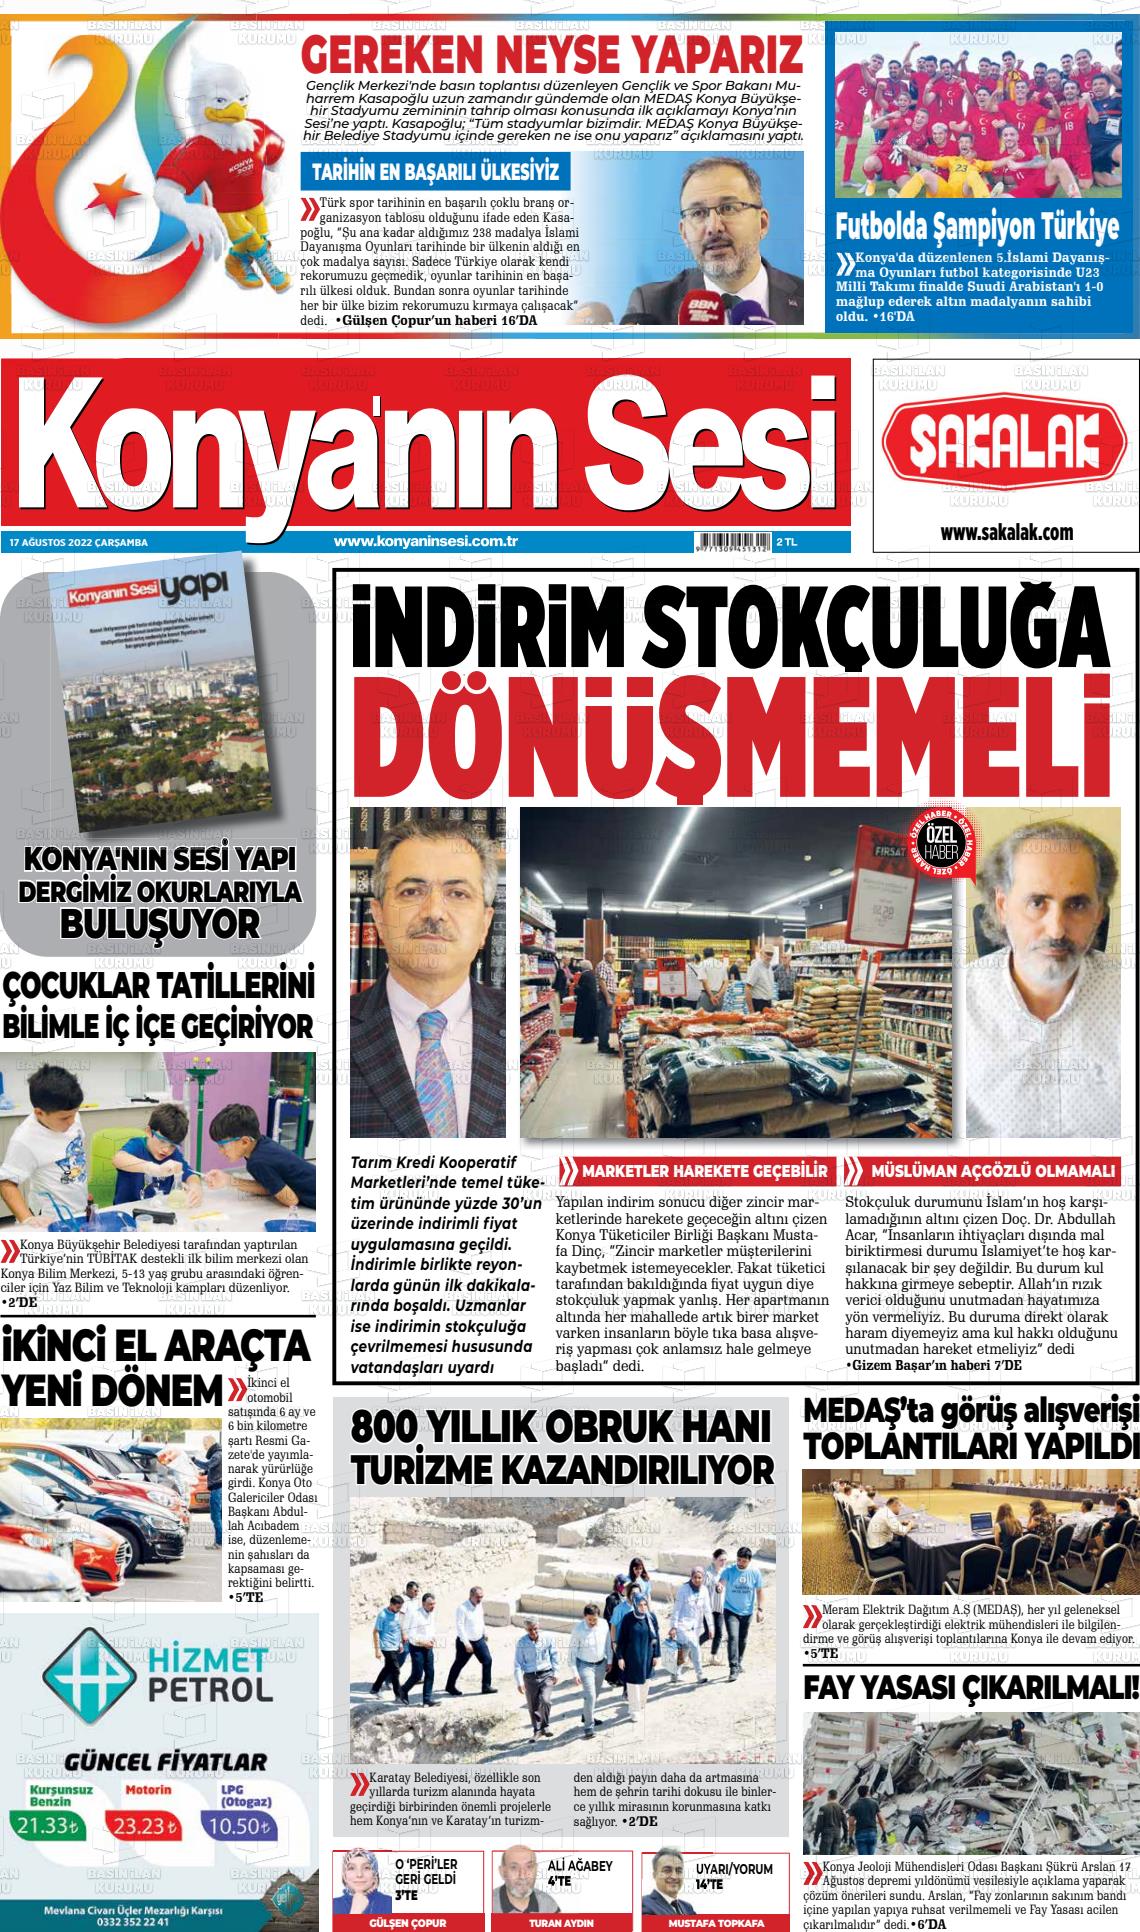 17 Ağustos 2022 Konyanin Sesi Gazete Manşeti